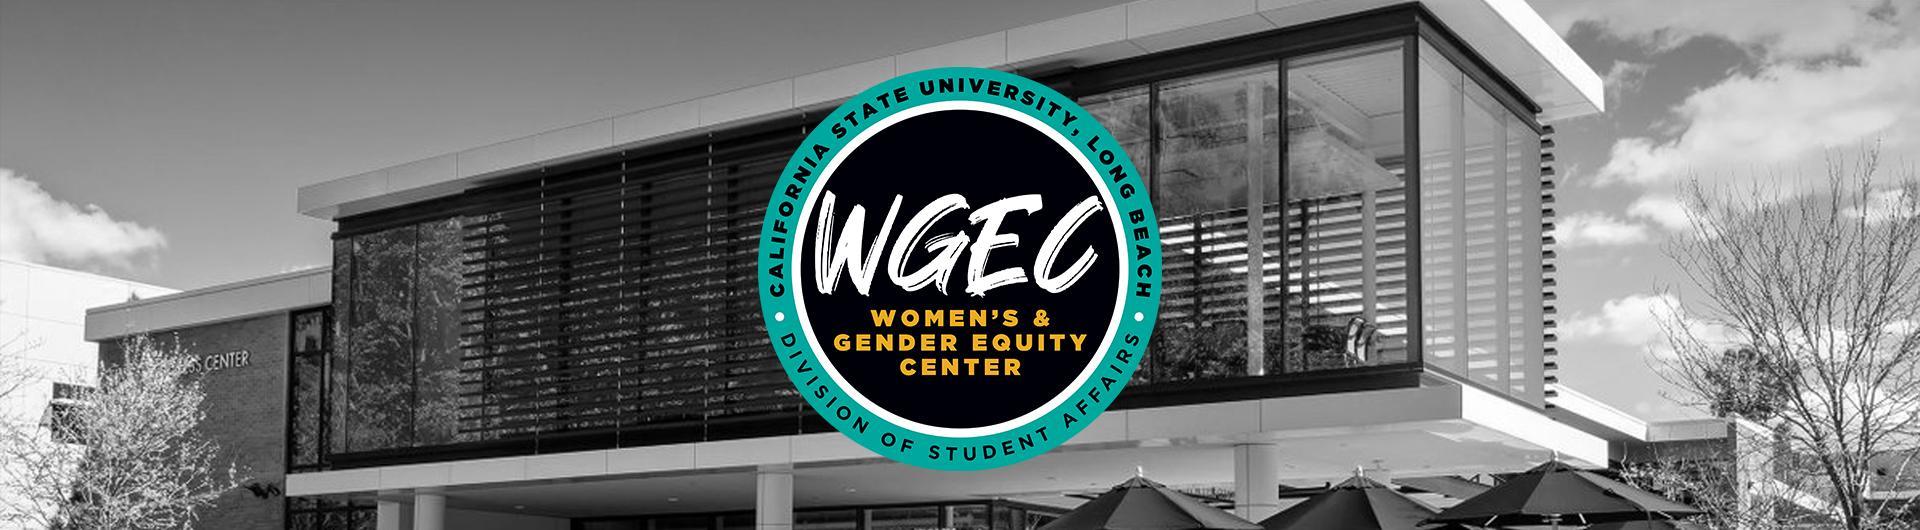 Women gender equity center